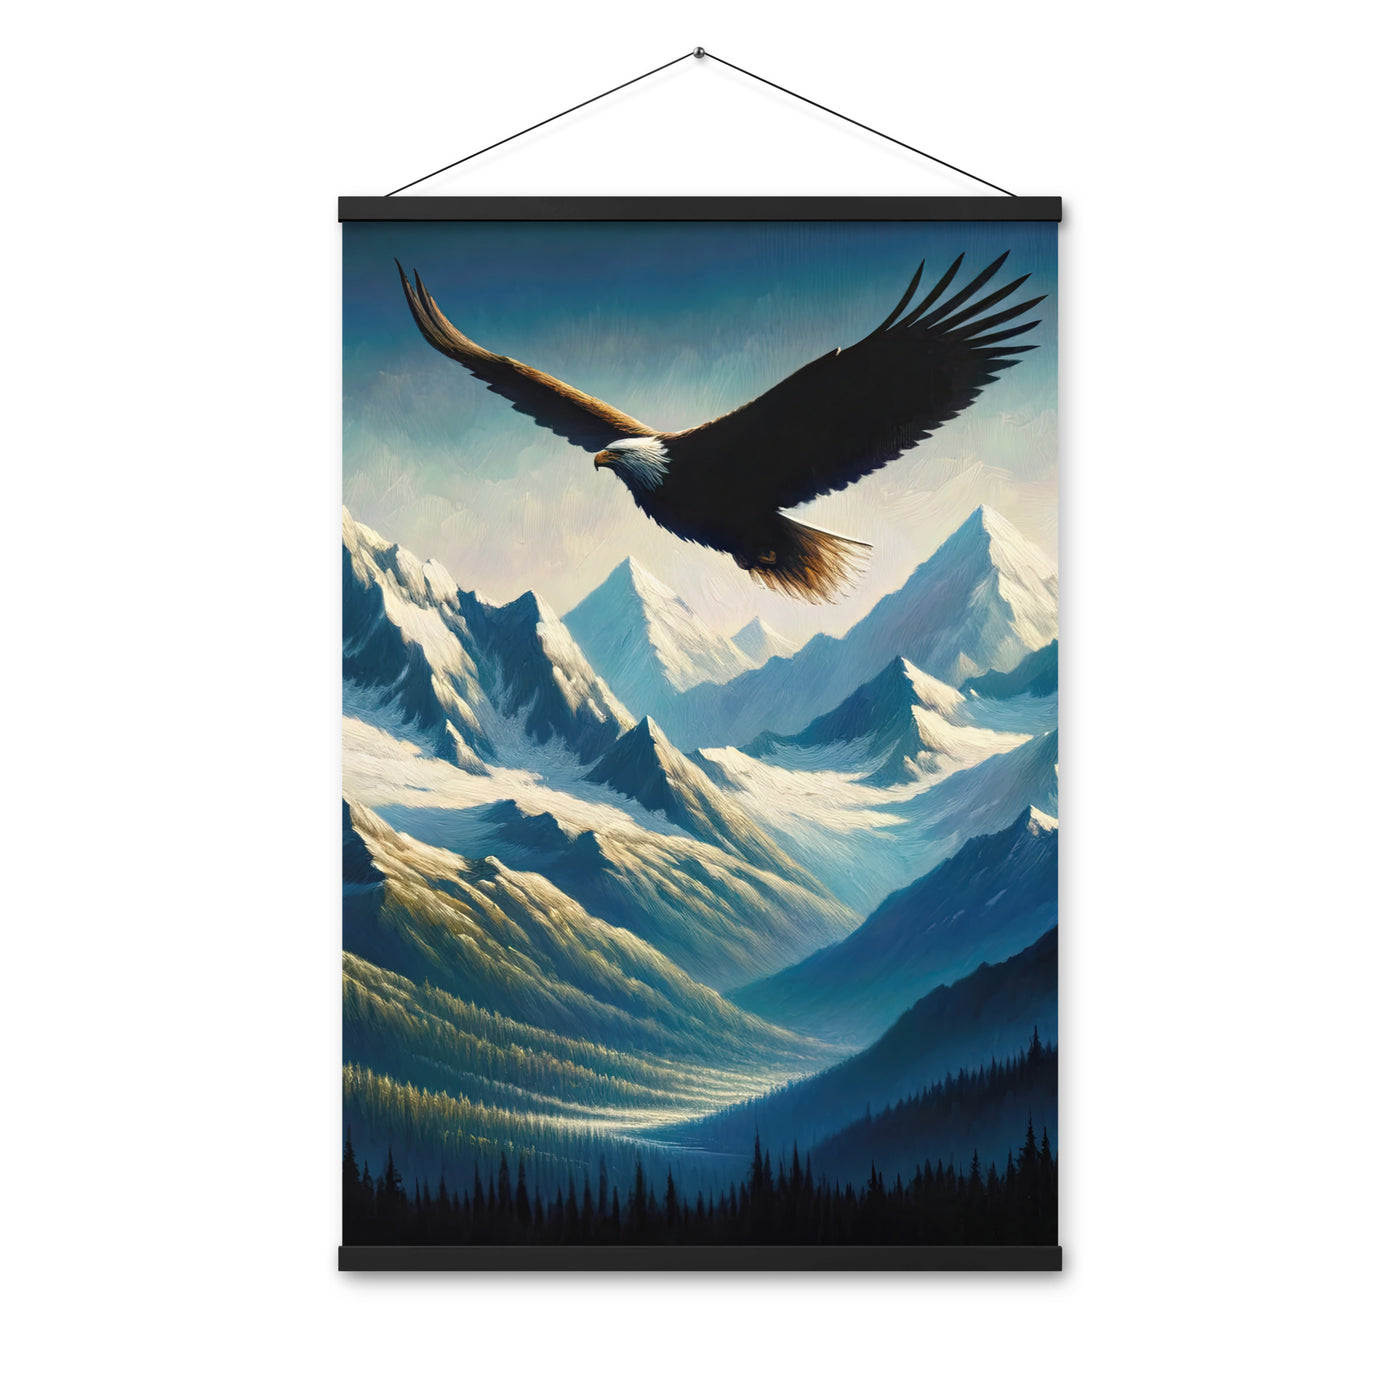 Ölgemälde eines Adlers vor schneebedeckten Bergsilhouetten - Premium Poster mit Aufhängung berge xxx yyy zzz 61 x 91.4 cm